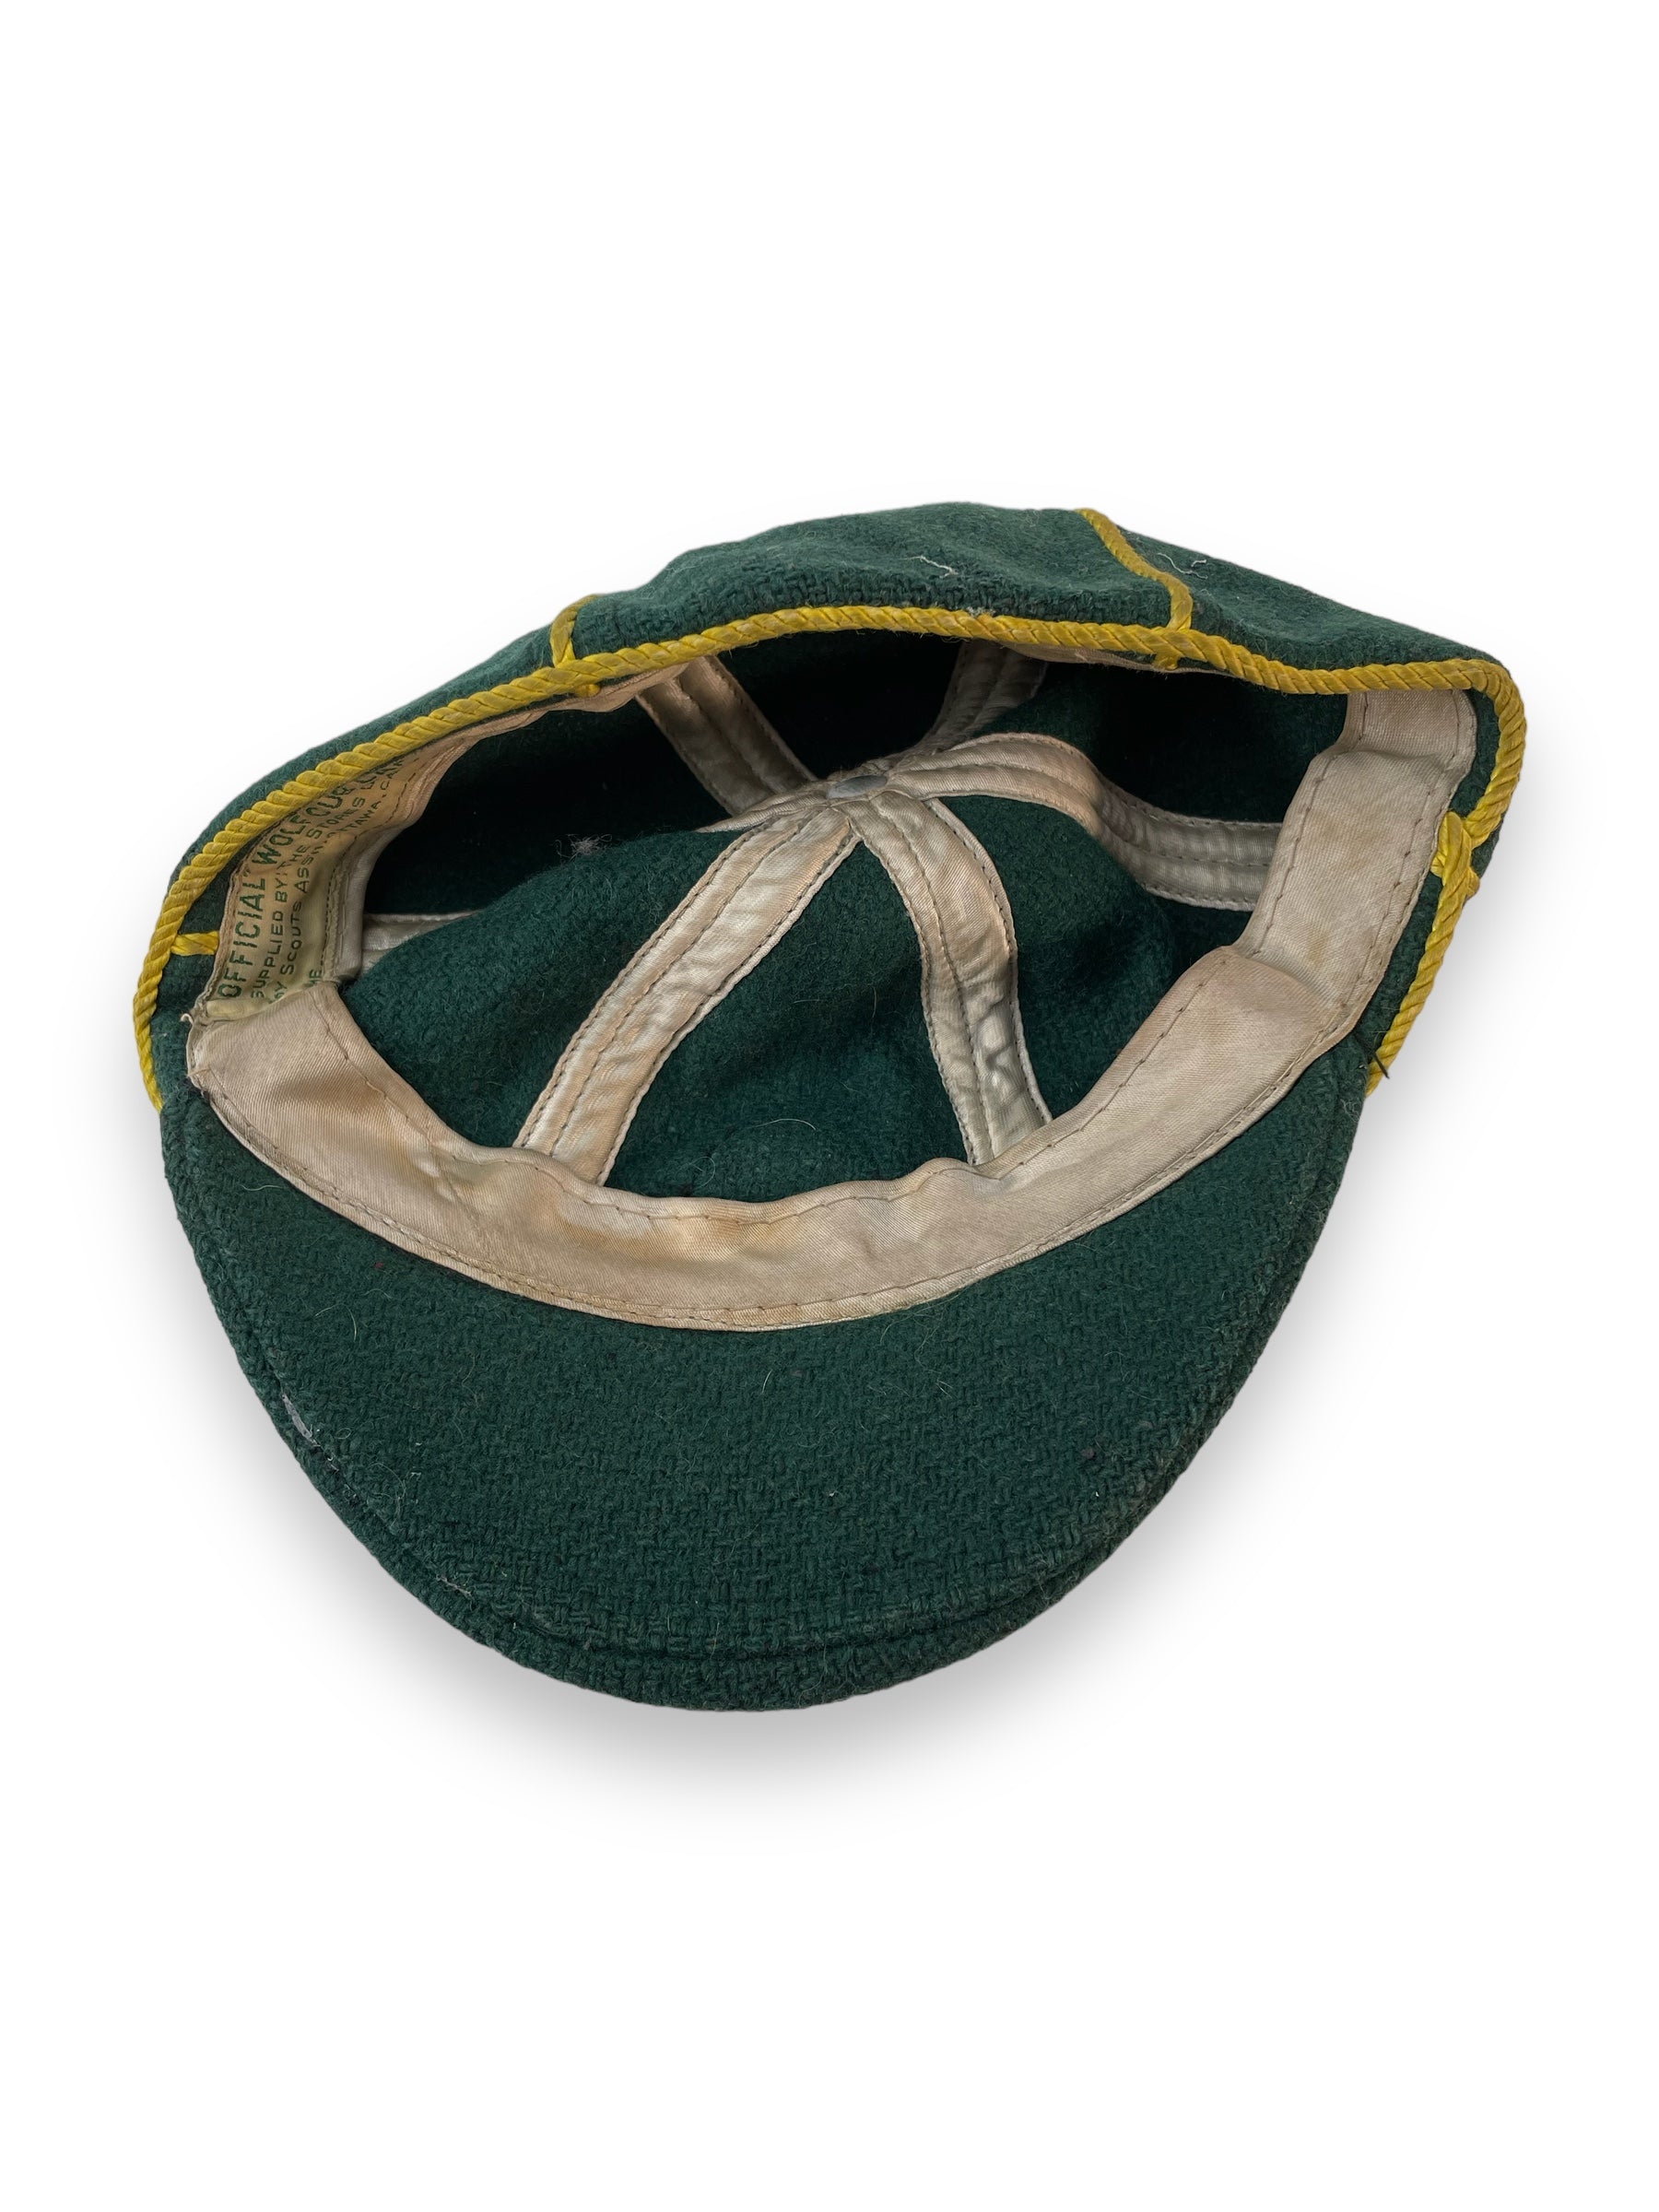 Pull et casquette des Boy Scouts du Canada des années 1960